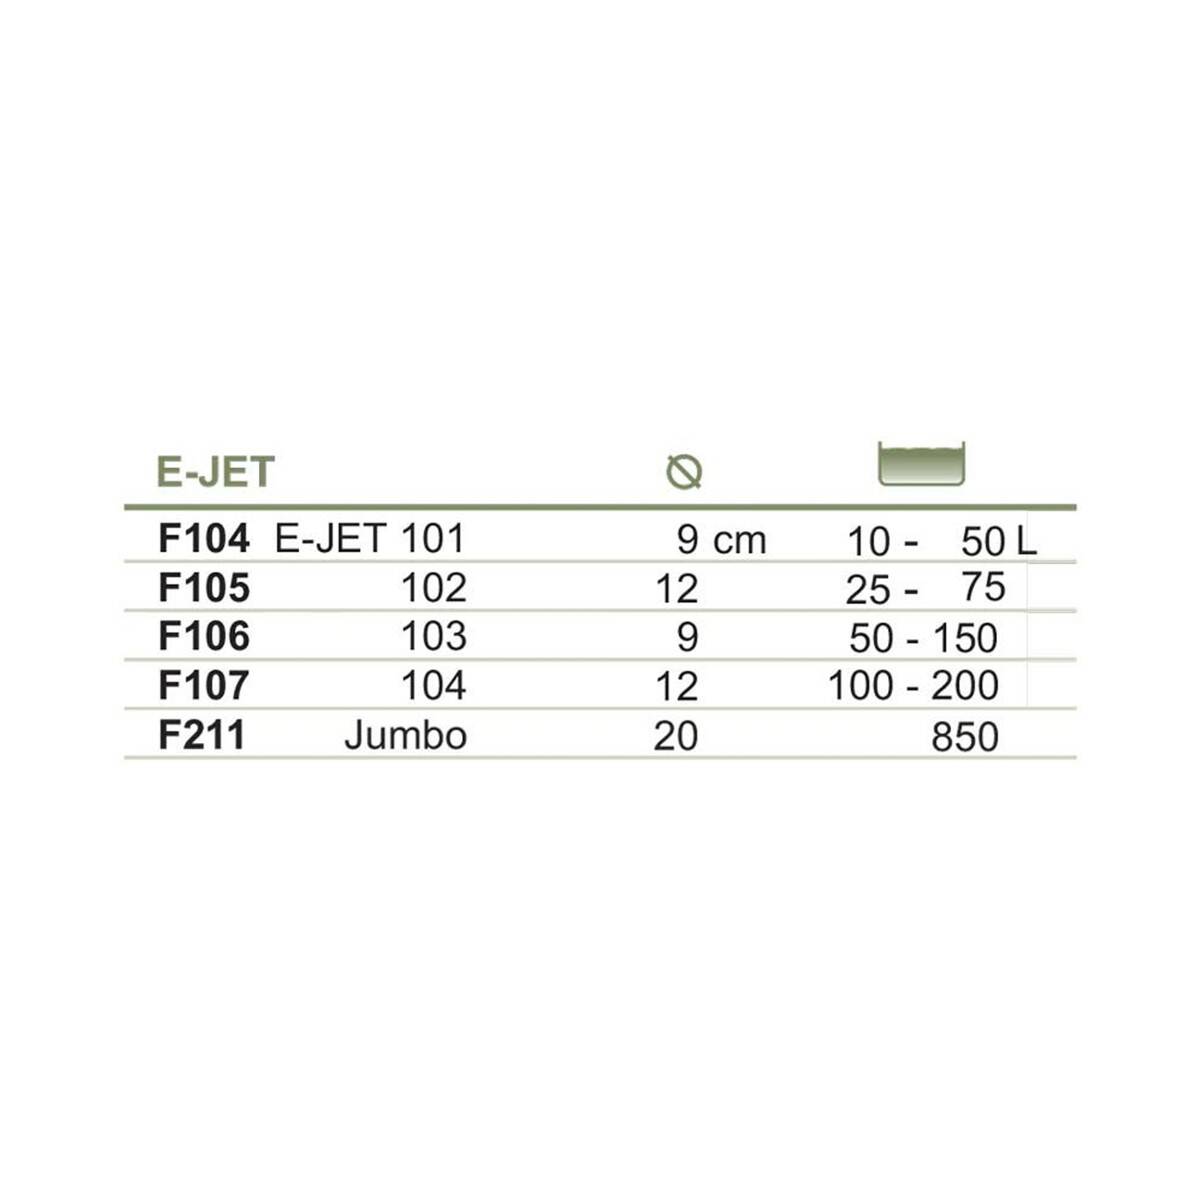 Filtr gąbkowy E-JET 104 Happet do akw. 100-200l (Zdjęcie 5)